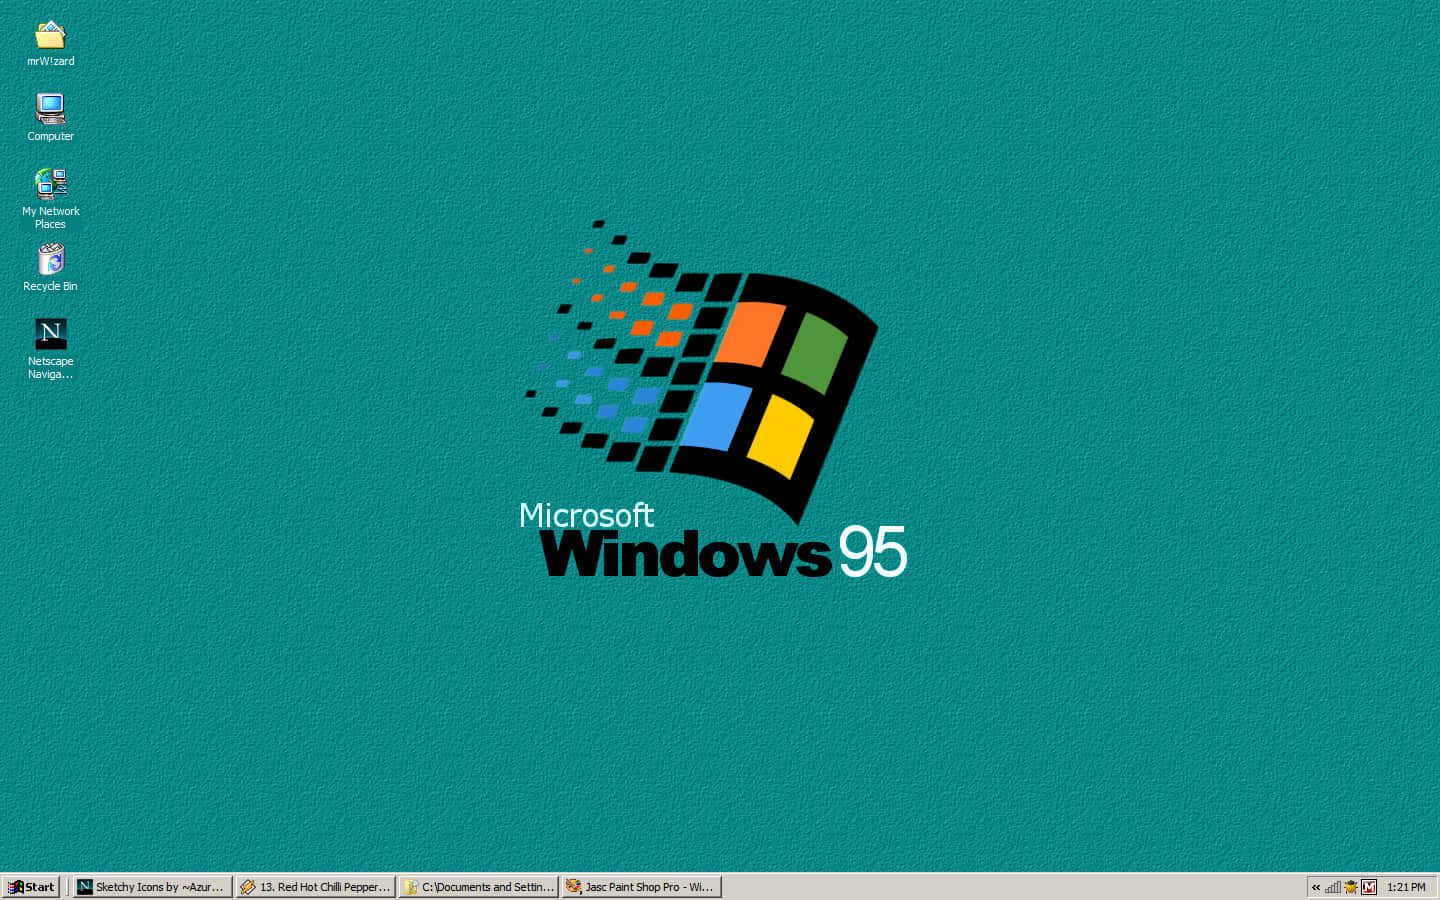 Abbracciail Progresso Tecnologico Con Il Lancio Di Windows 95